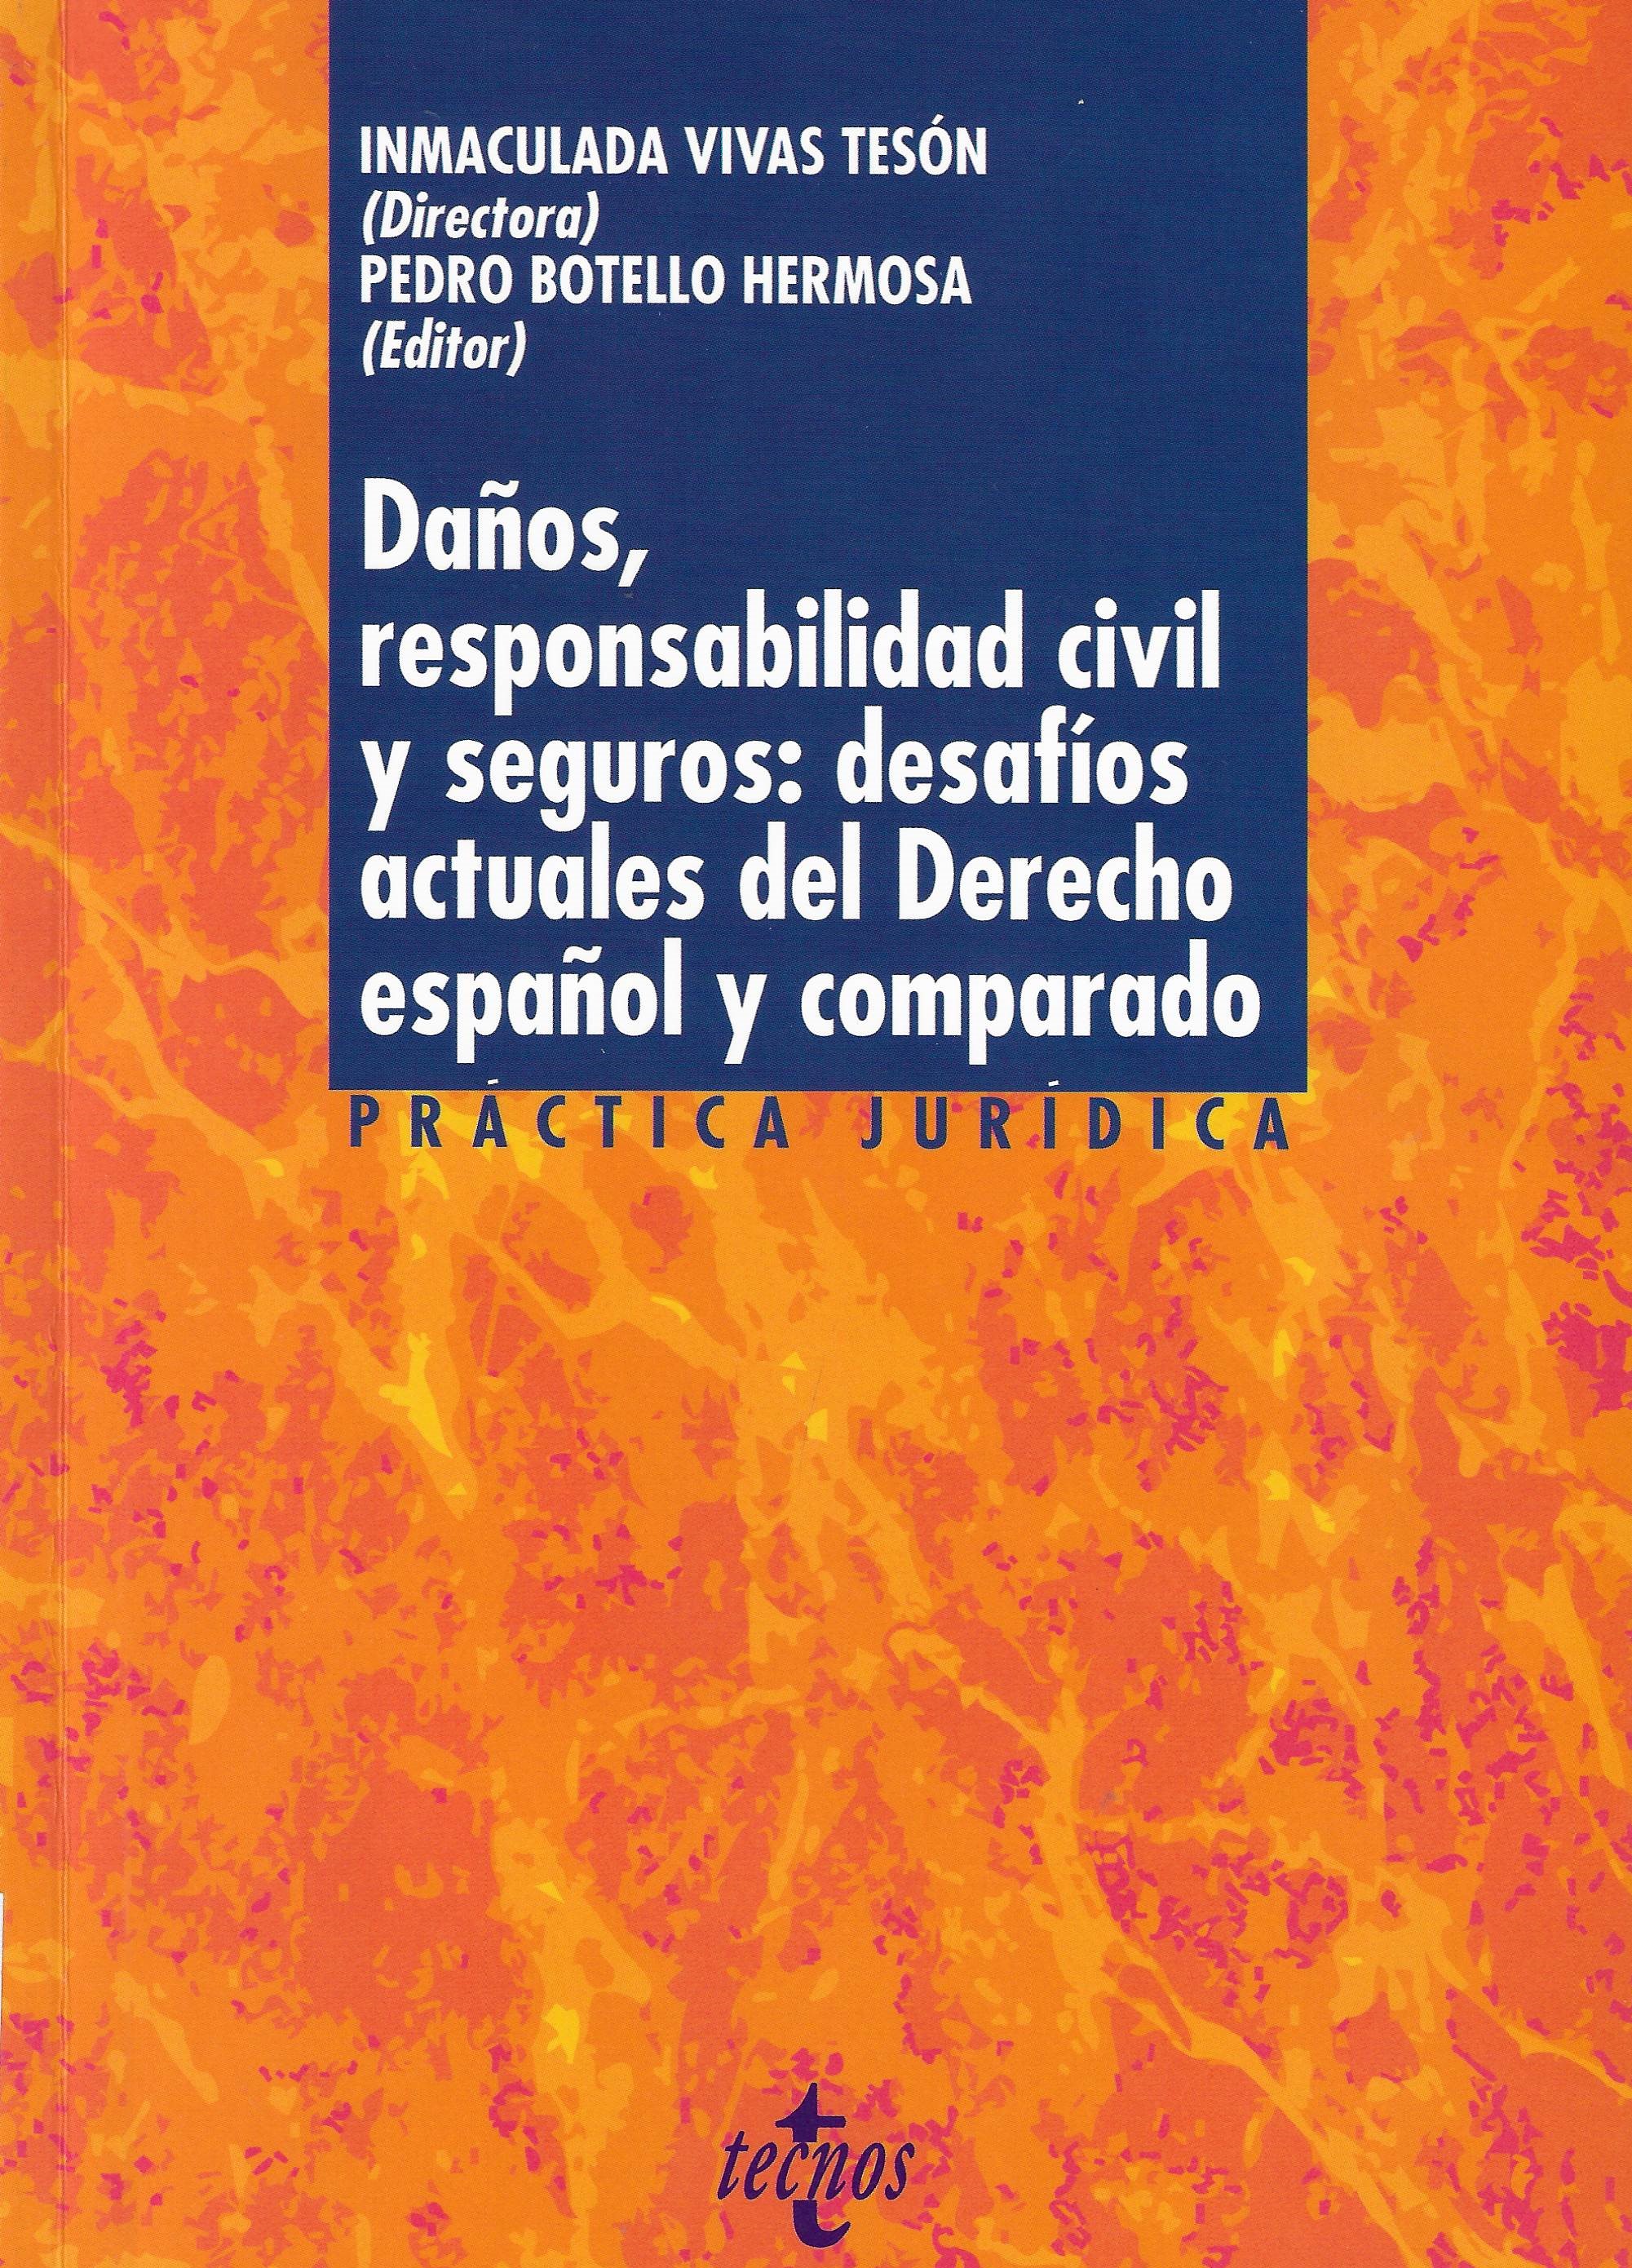 Imagen de portada del libro Daños, responsabilidad civil y seguros